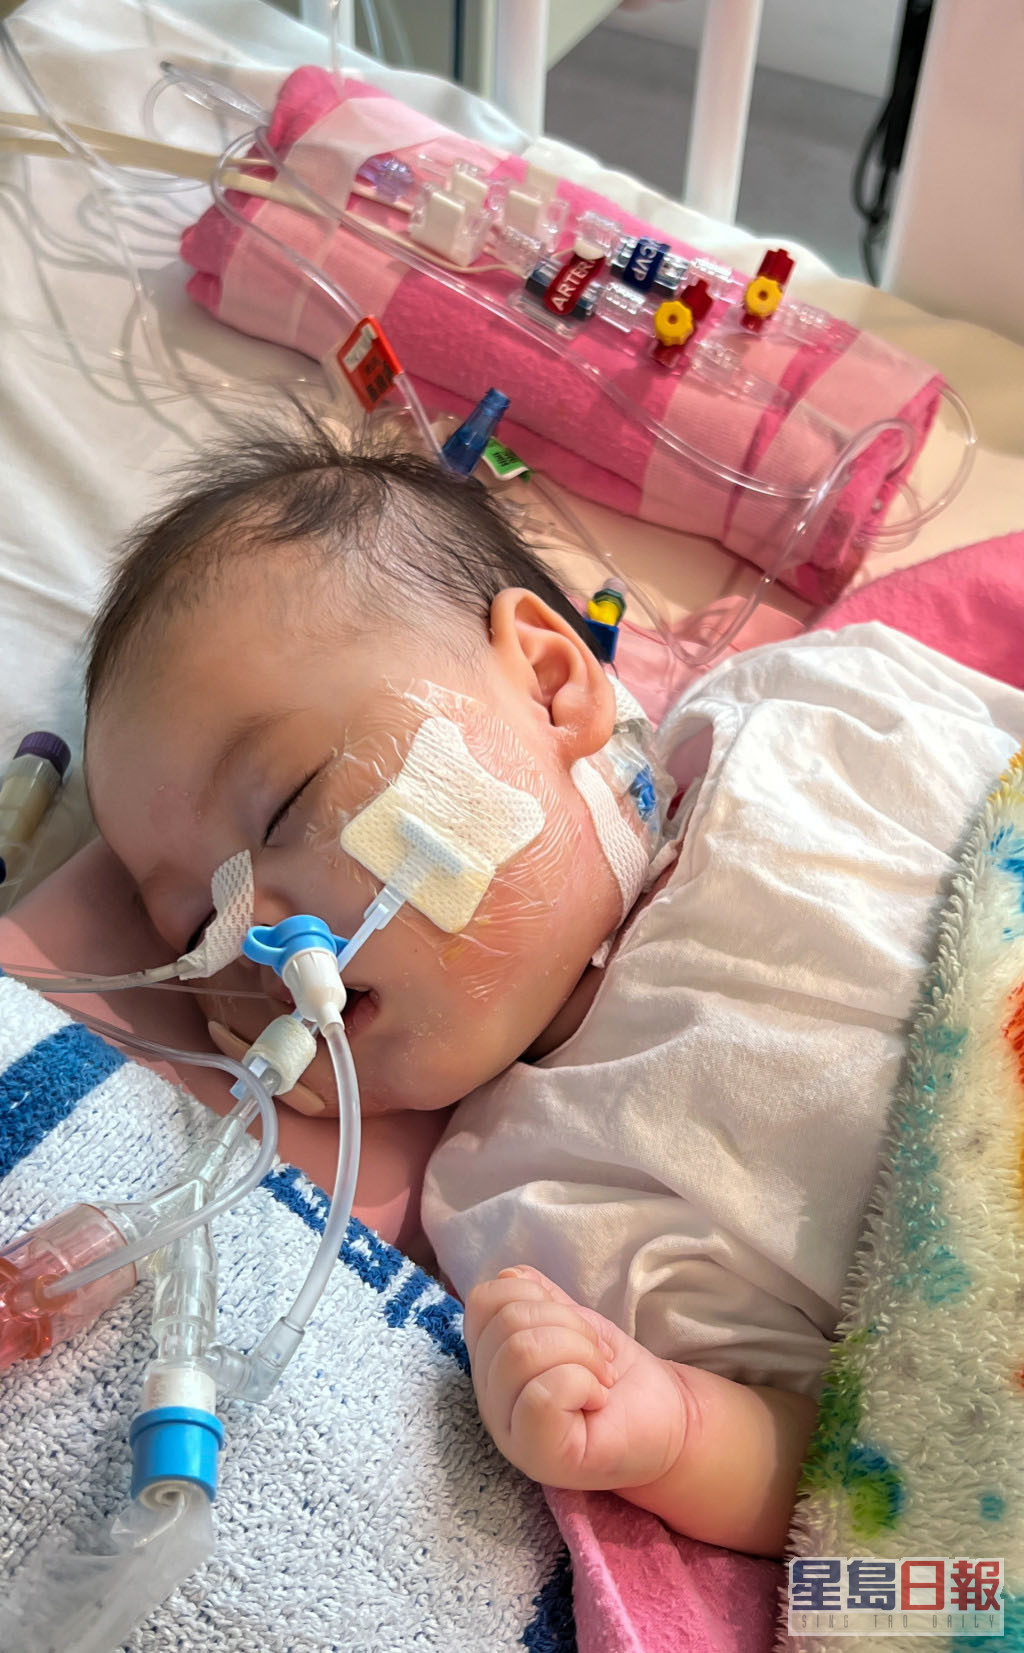 4個月大女嬰芷希是1999年以來，僅有3宗成功的跨境器官捐贈個案之一。資料圖片